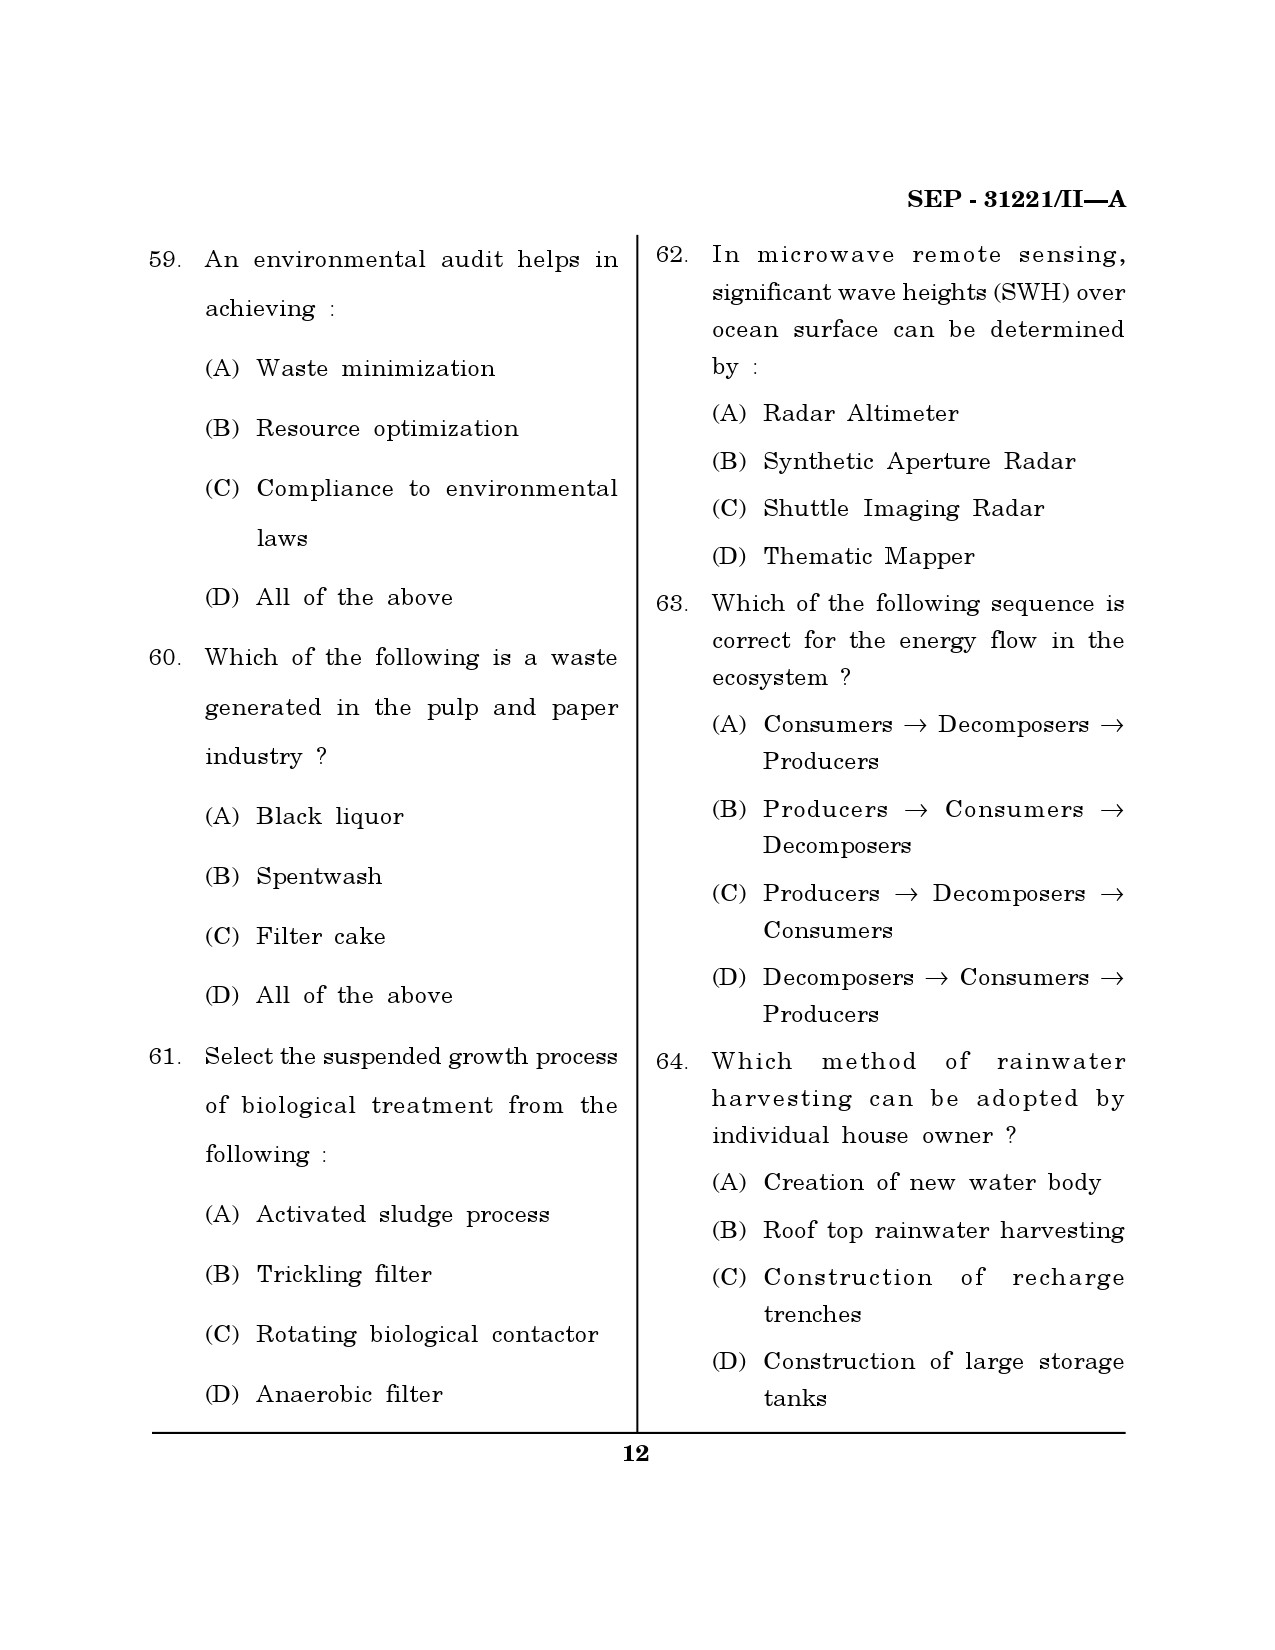 Maharashtra SET Environmental Sciences Exam Question Paper September 2021 11